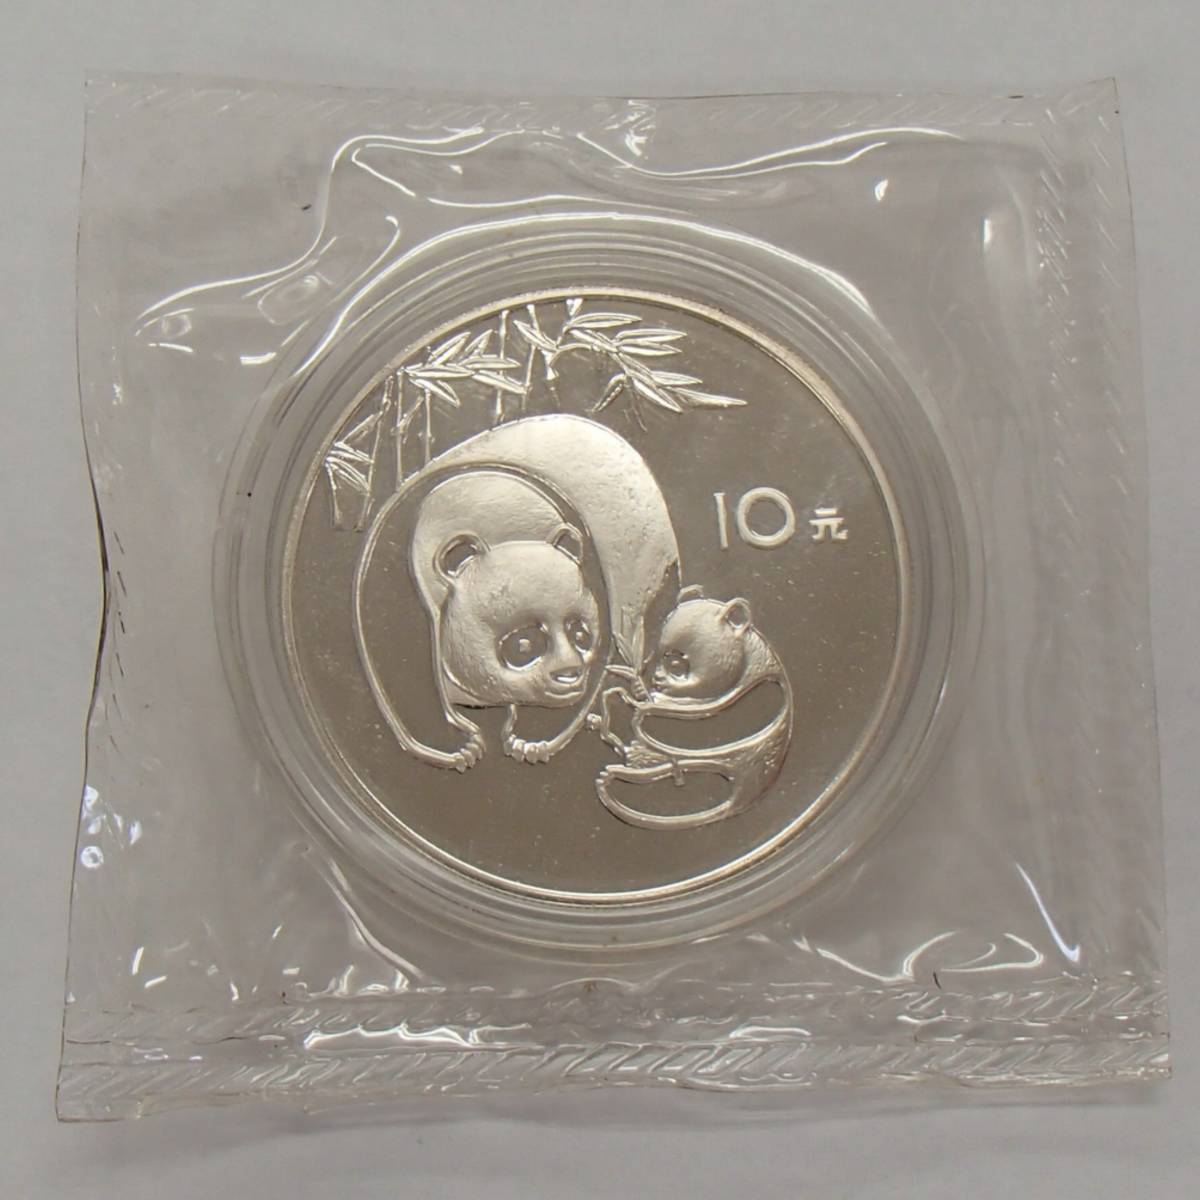 1984年 10元 パンダ 銀貨 中華人民共和国 パンダコイン シルバー